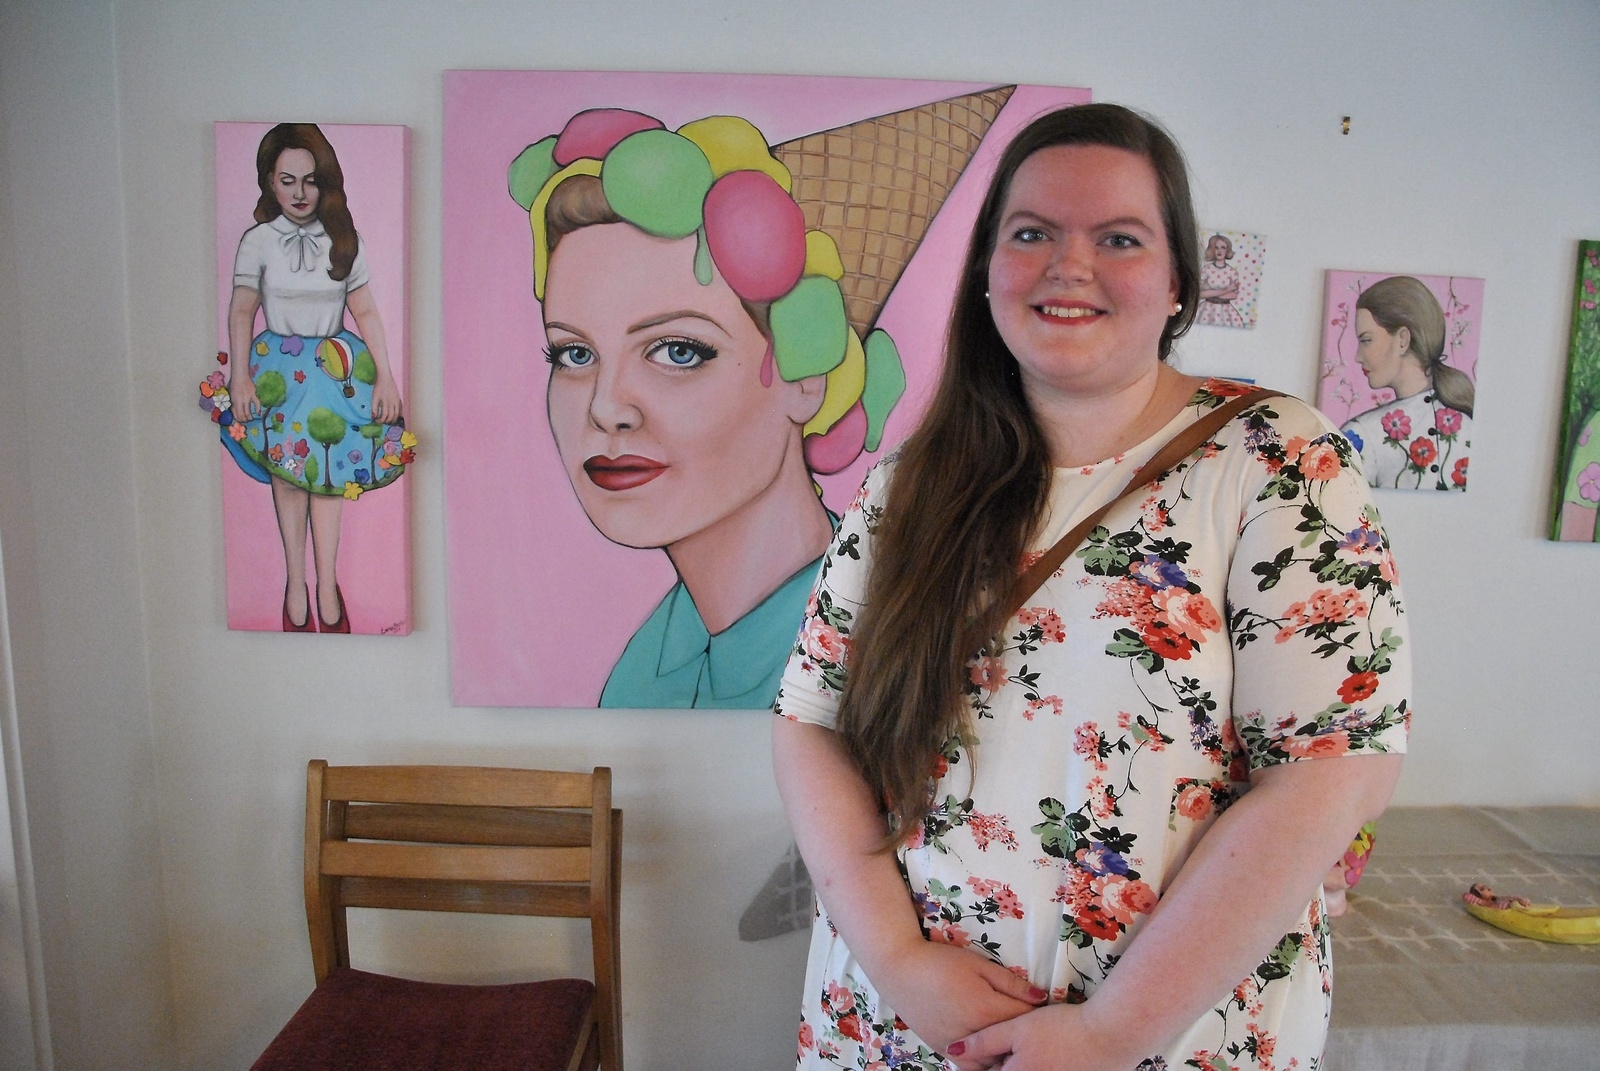 23-åriga Emma Berlin från Farstorp är en av flera utställare i församlingshemmet. Foto: Kristina HöjendaL